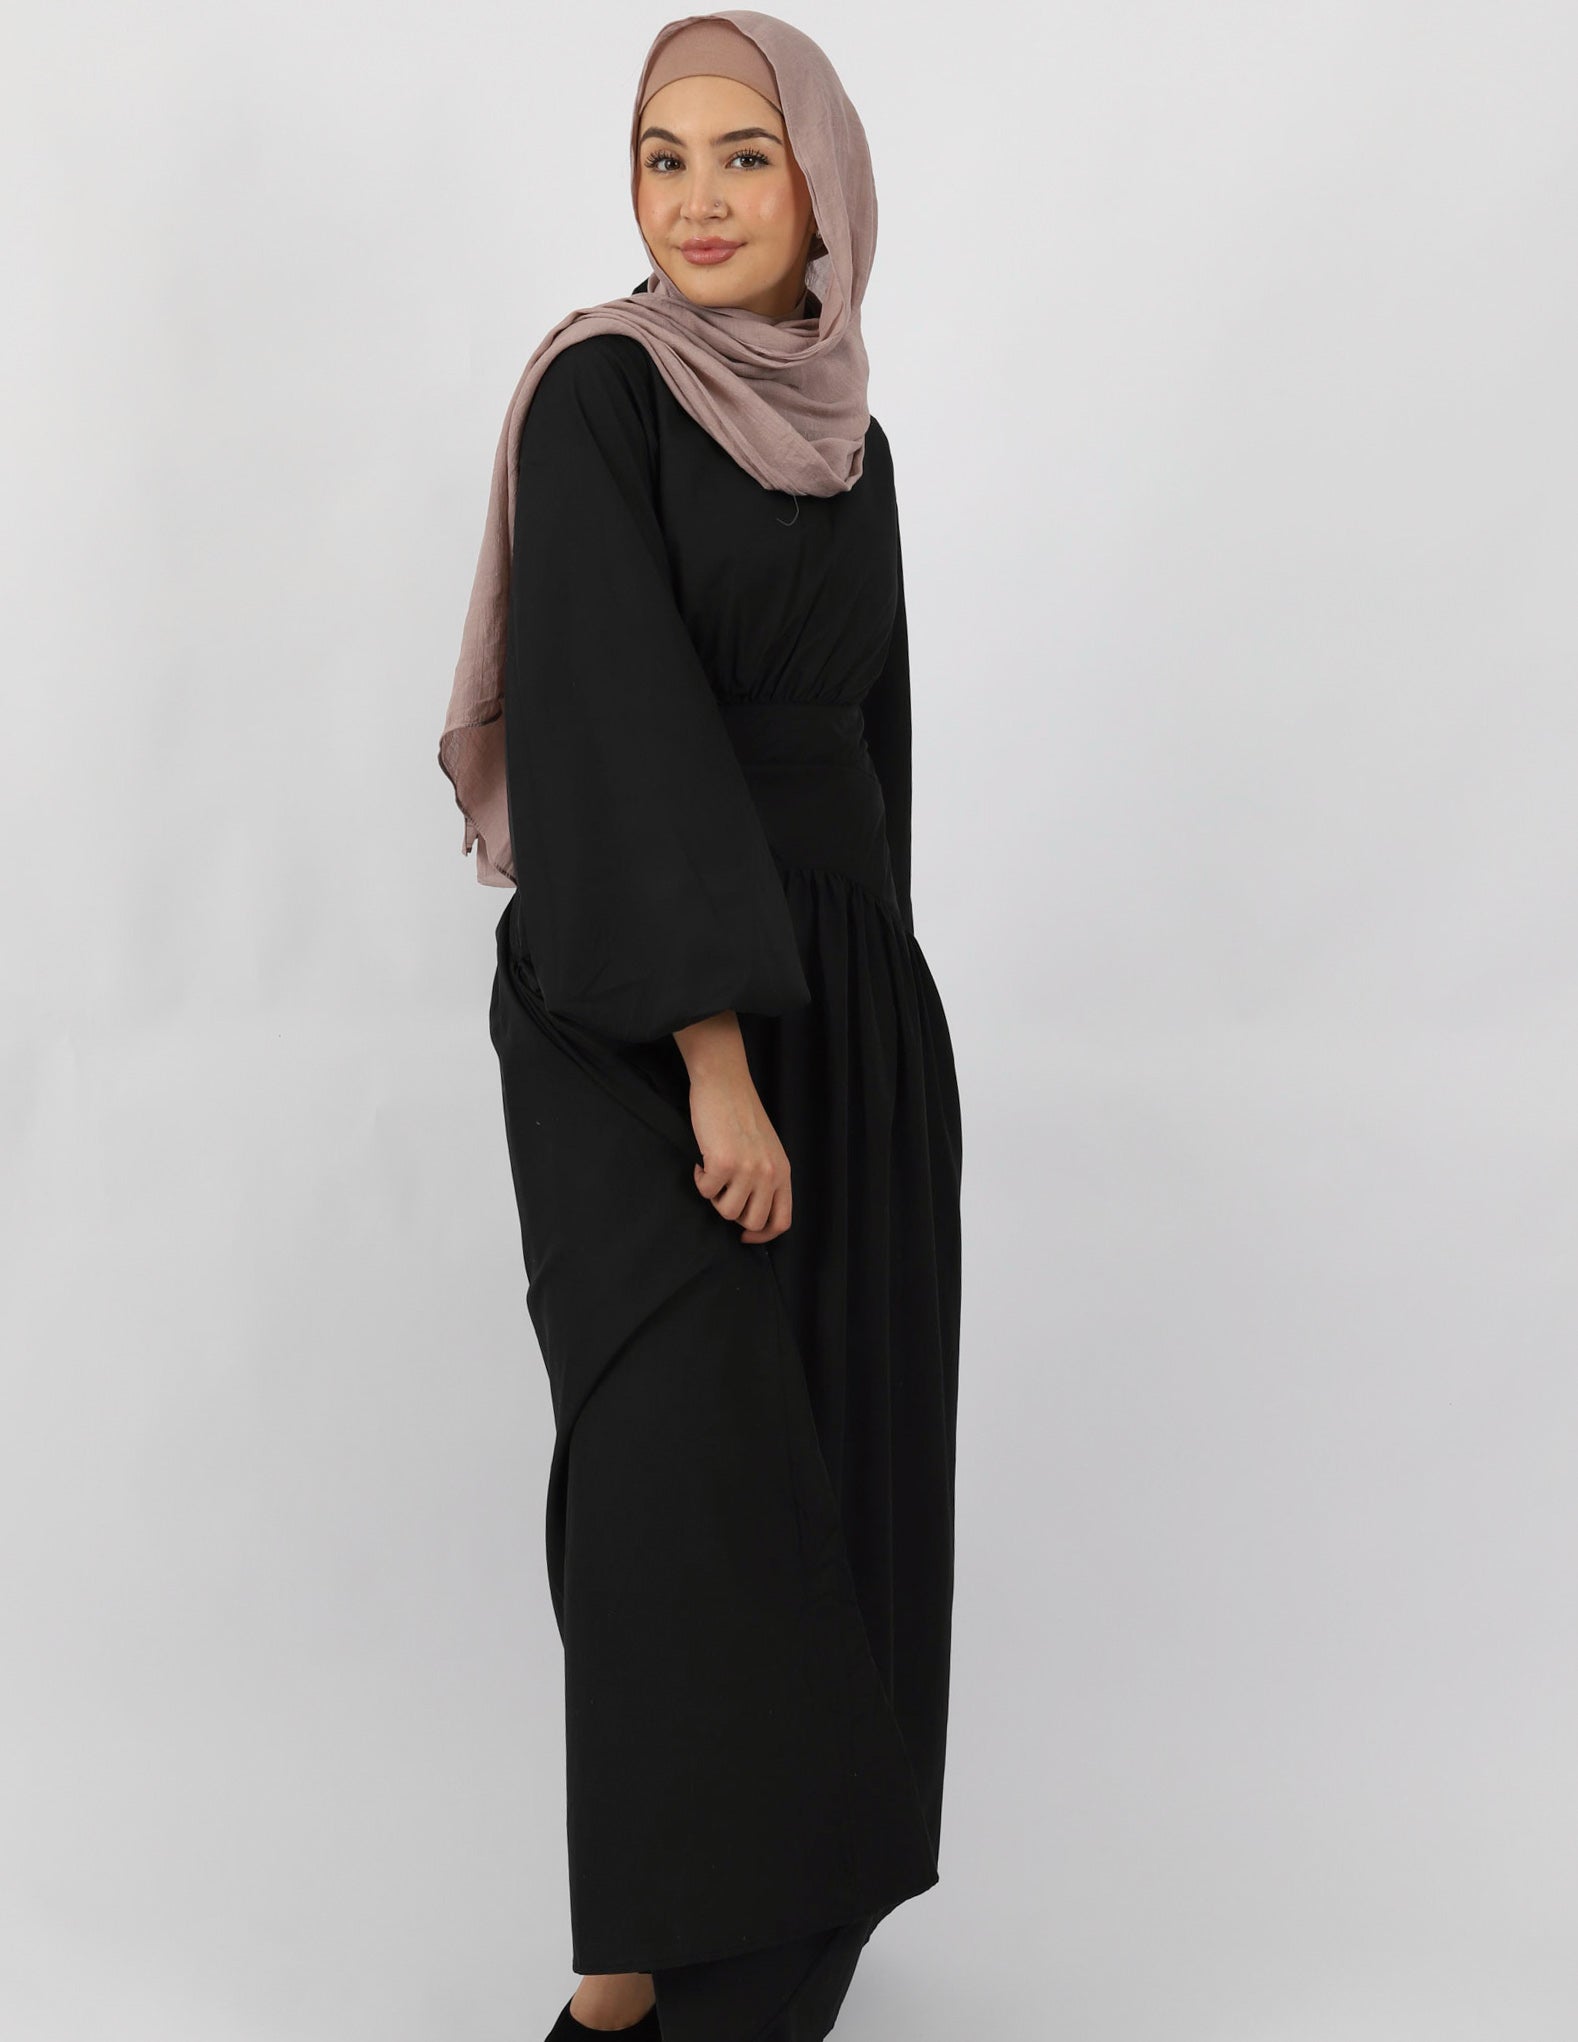 M7771Black-dress-abaya